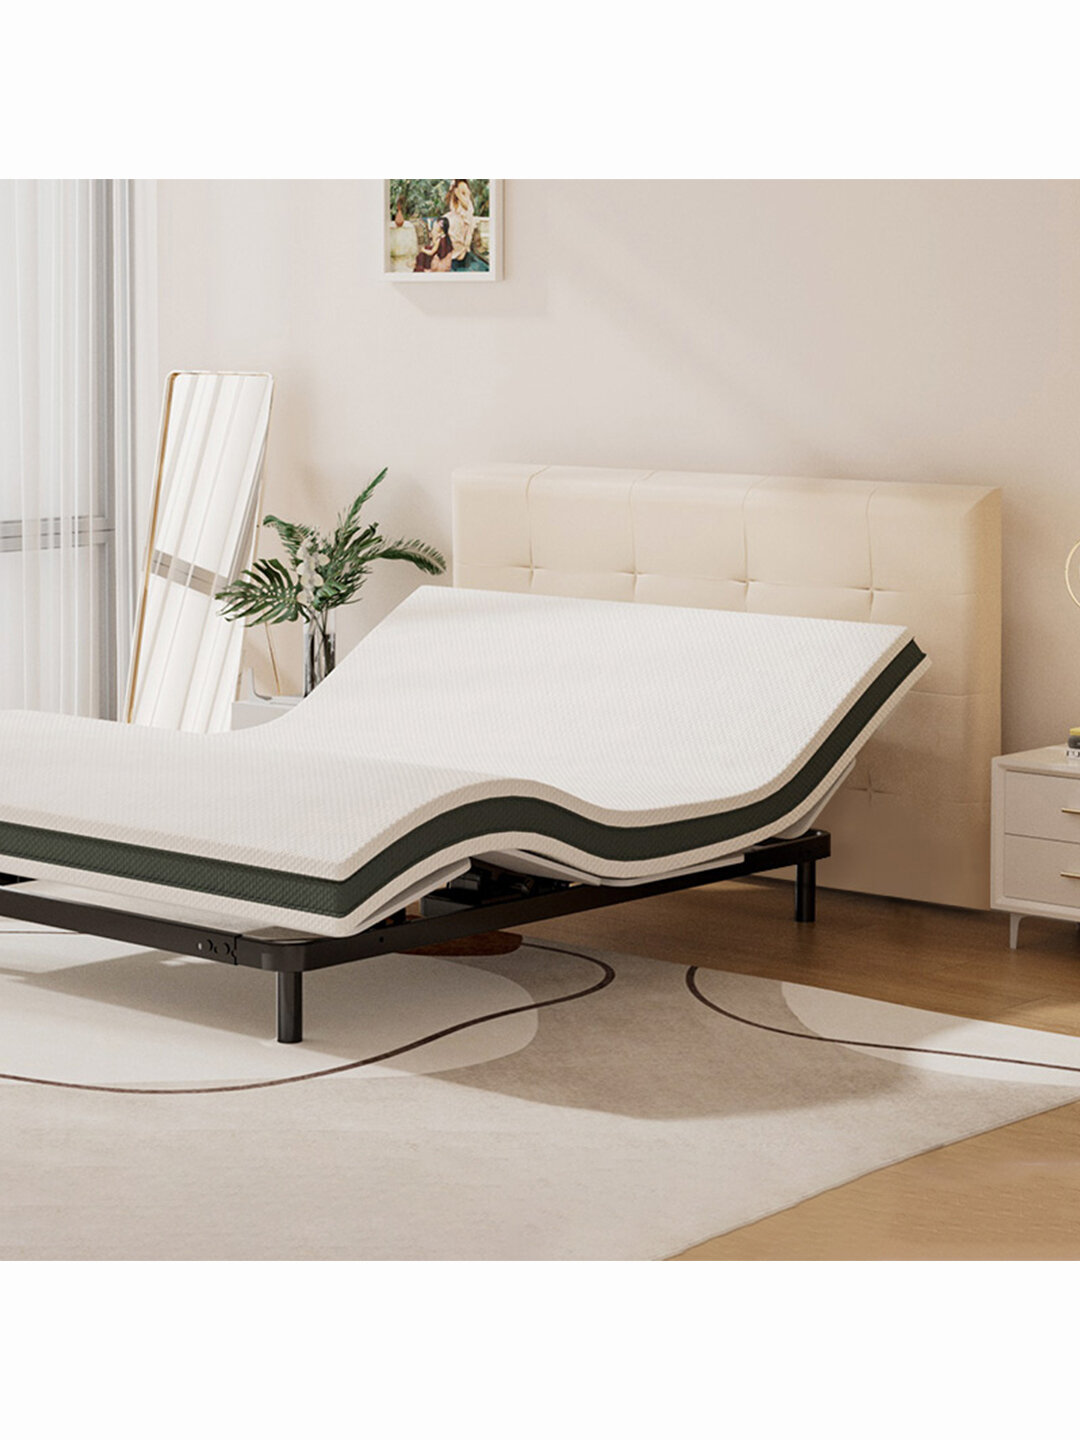 Умная двуспальная кровать Xiaomi 8H Find Smart Electric Bed Mysterious 1.8 m Beige DE1 (без матраса)